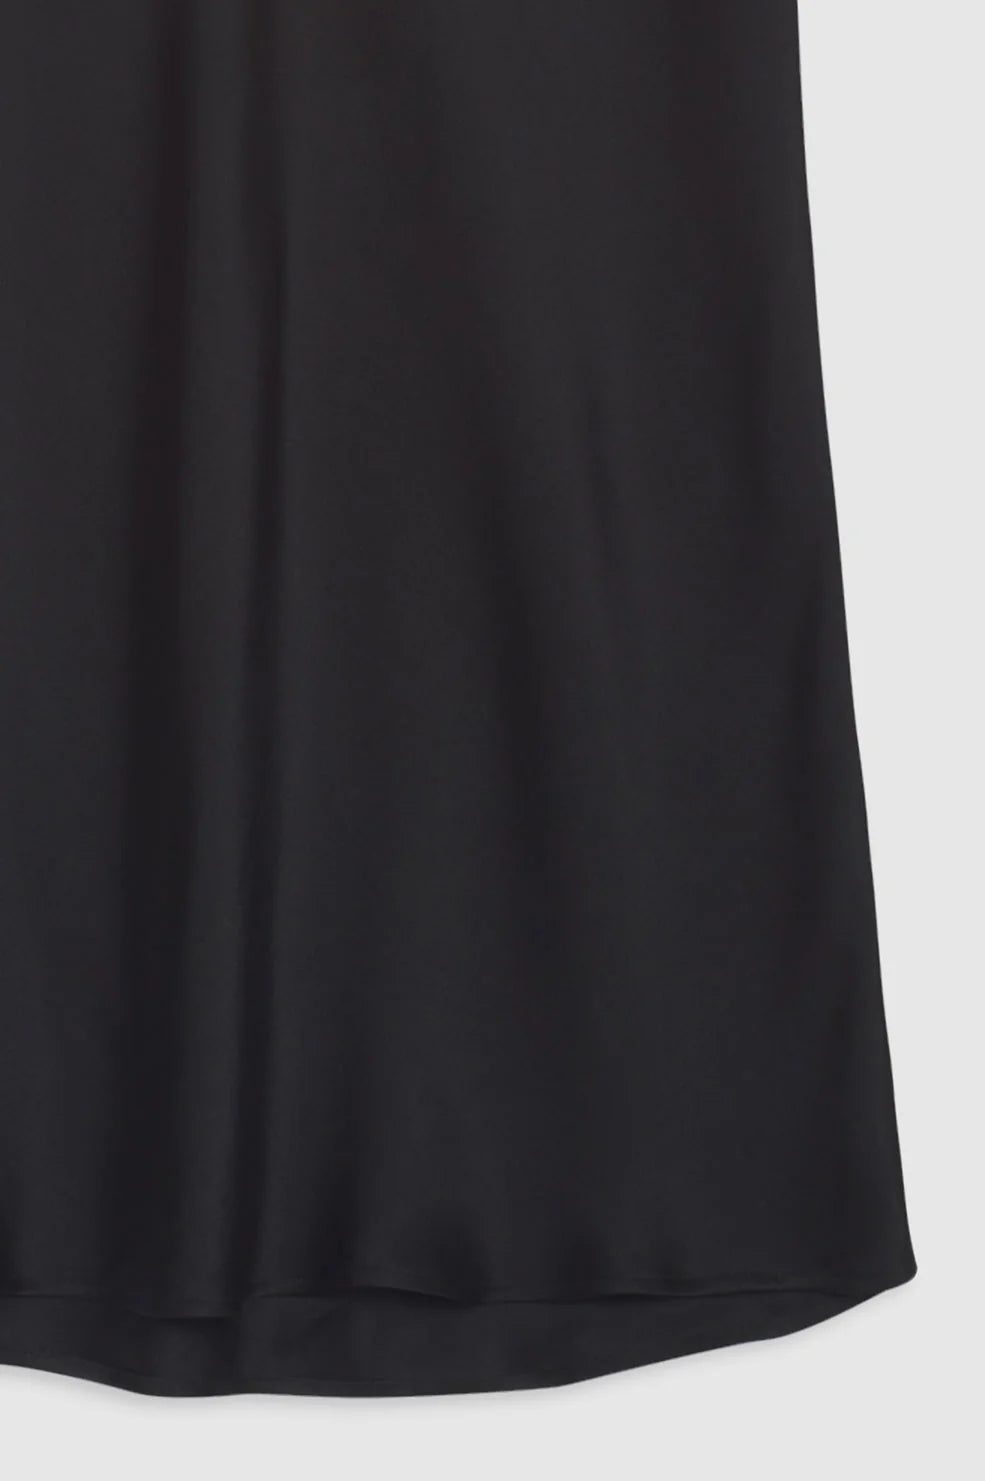 Bar Silk Skirt in Black